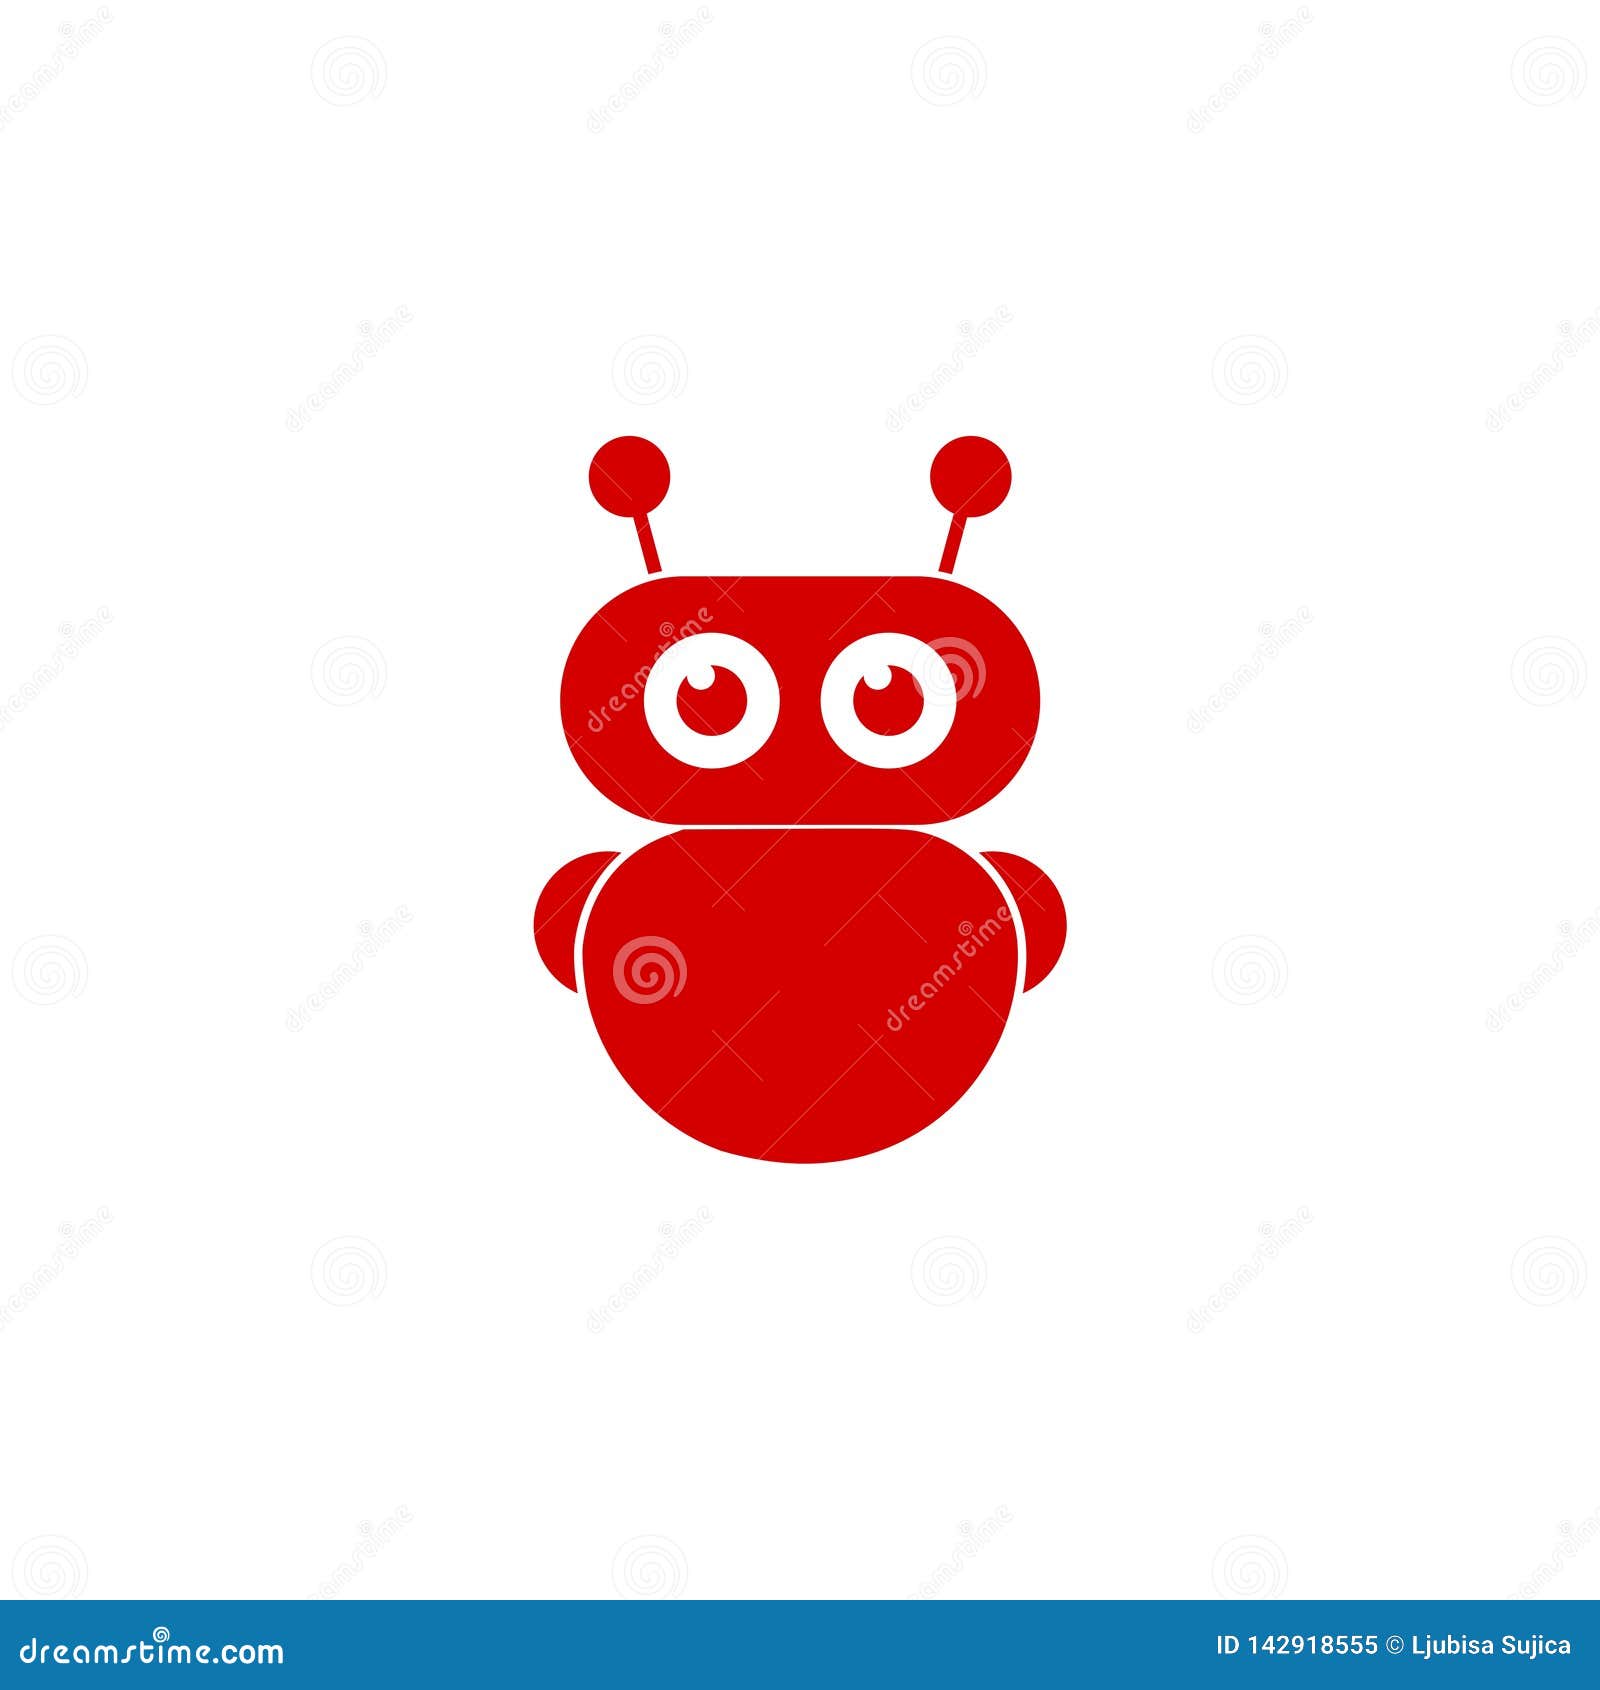 Với biểu tượng hoặc biểu tượng avatar robot đang cập nhật, bạn có thể cập nhật cho mình một hình ảnh robot mới nhất mỗi khi có phiên bản mới được phát hành. Hãy cùng khám phá và tìm kiếm những biểu tượng robot đang cập nhật để tạo ra một avatar độc đáo và sáng tạo nhất.